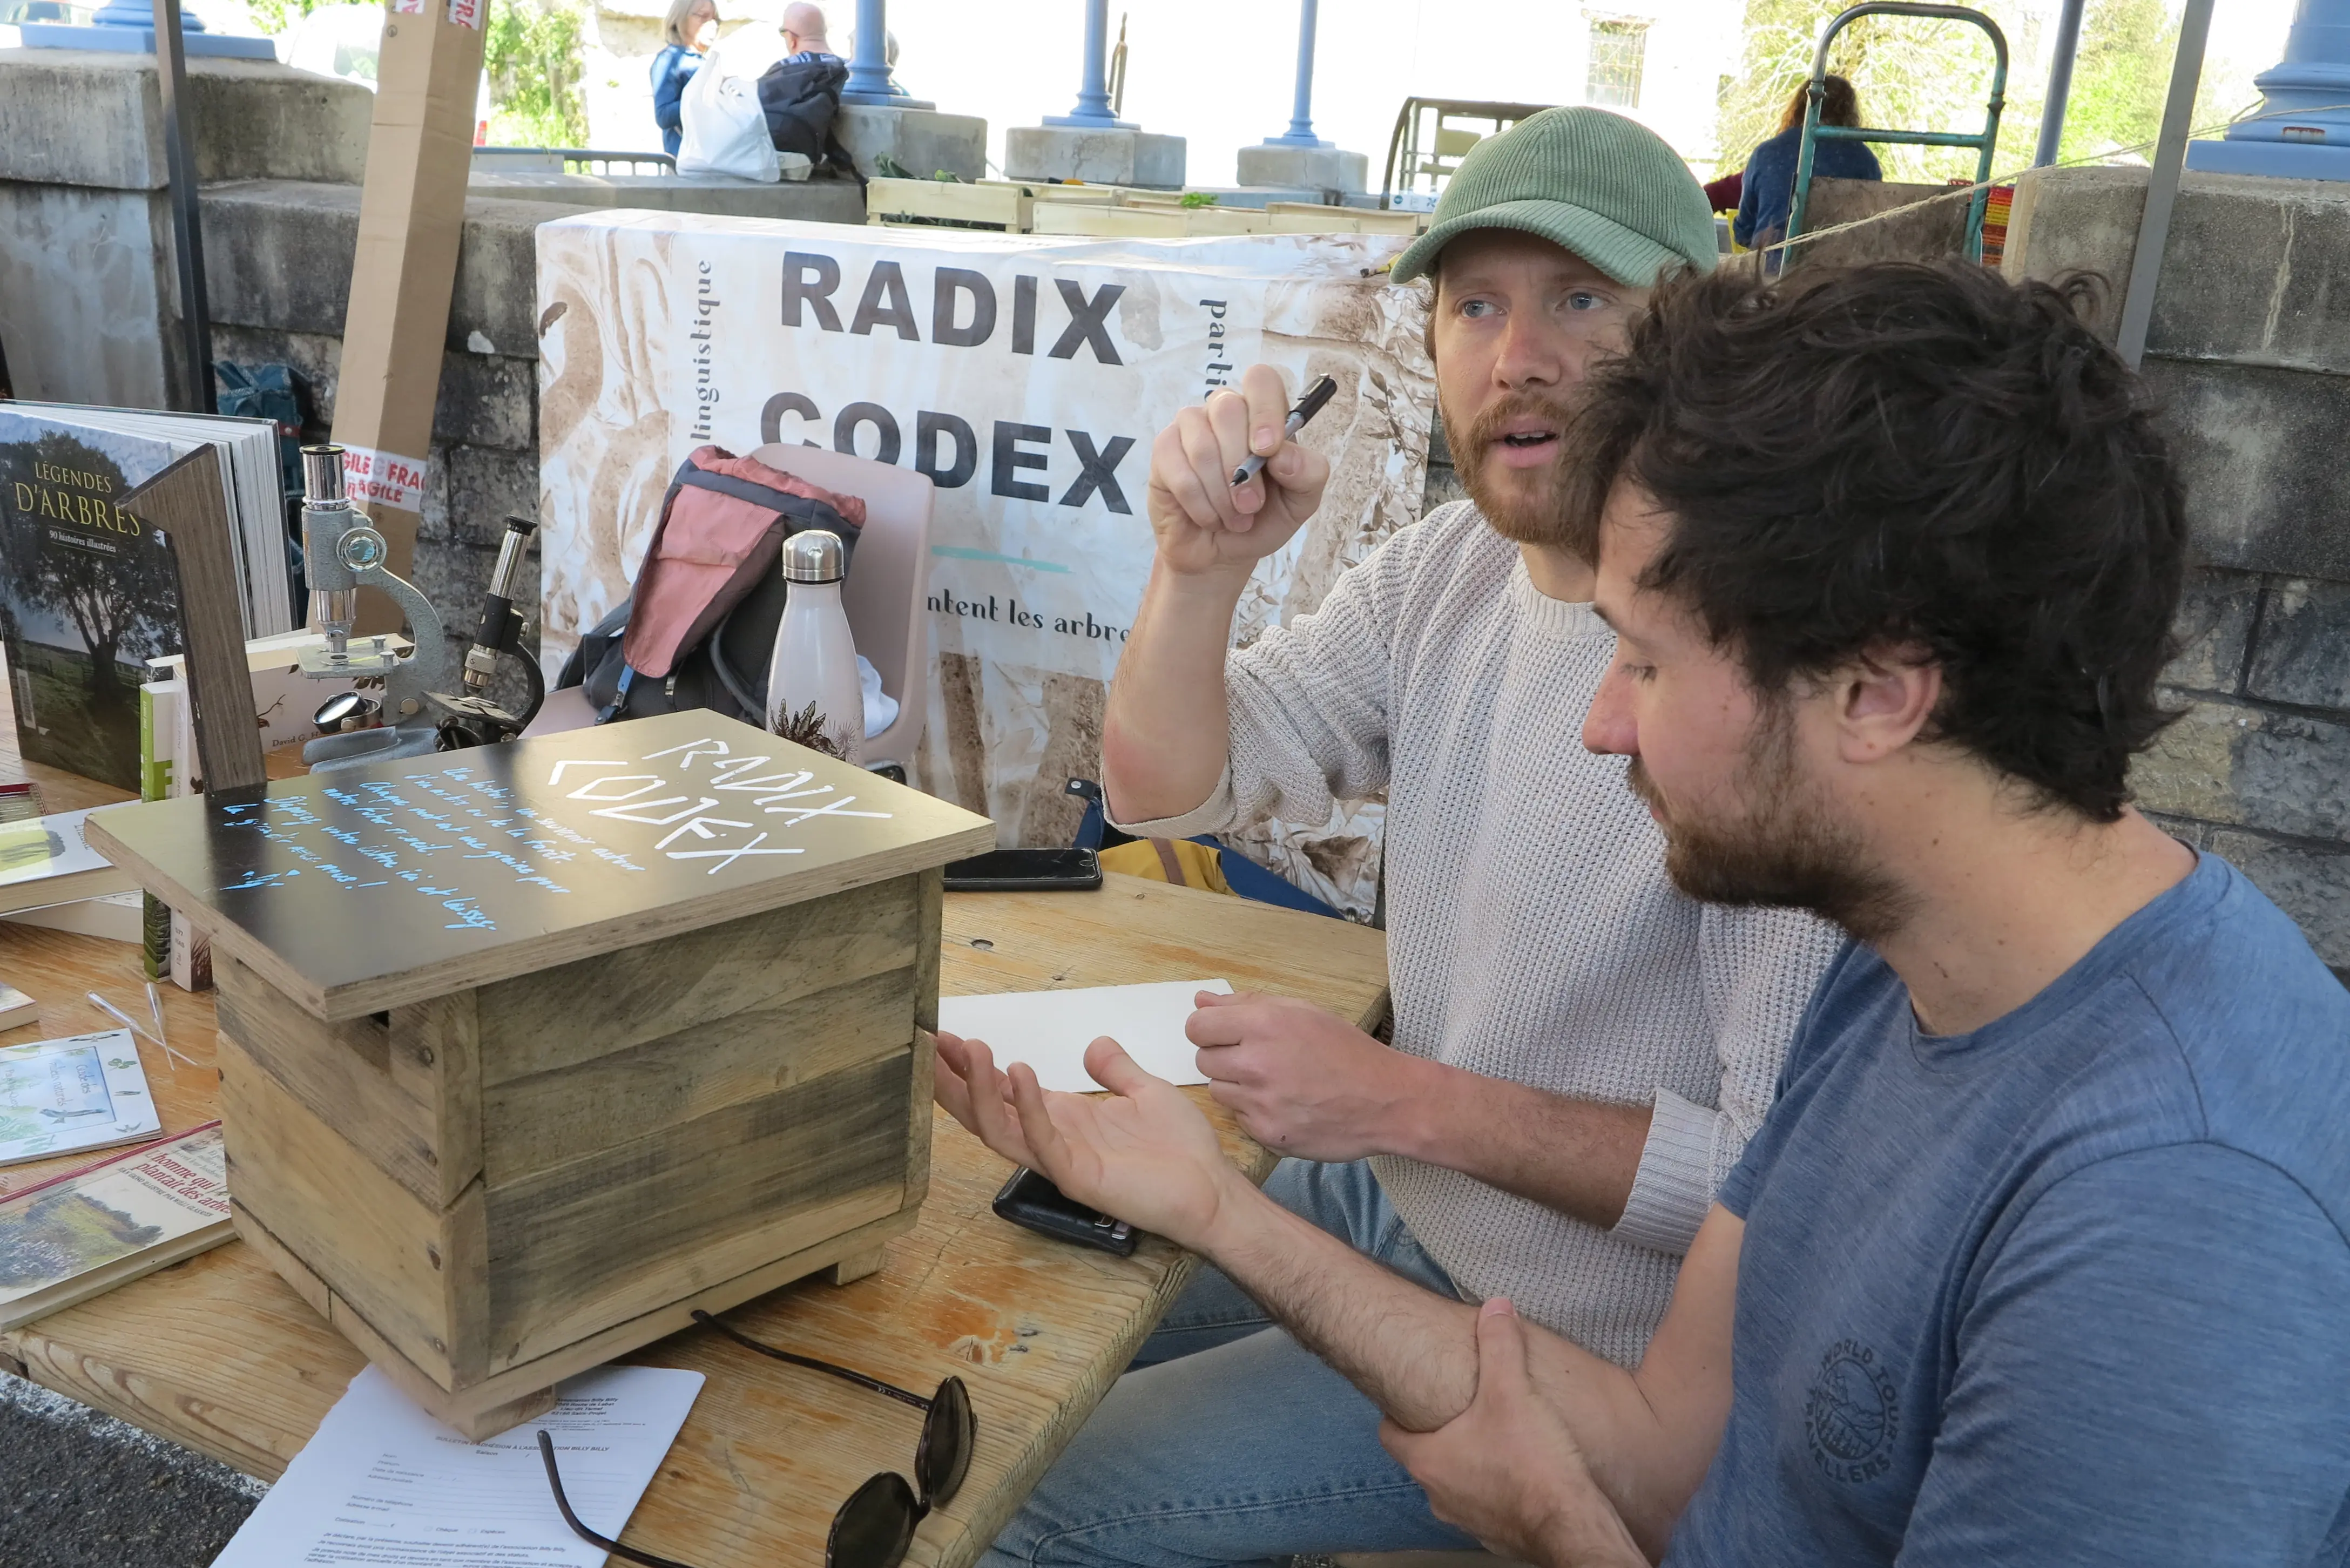 Stand radix codex au marché de Caylus